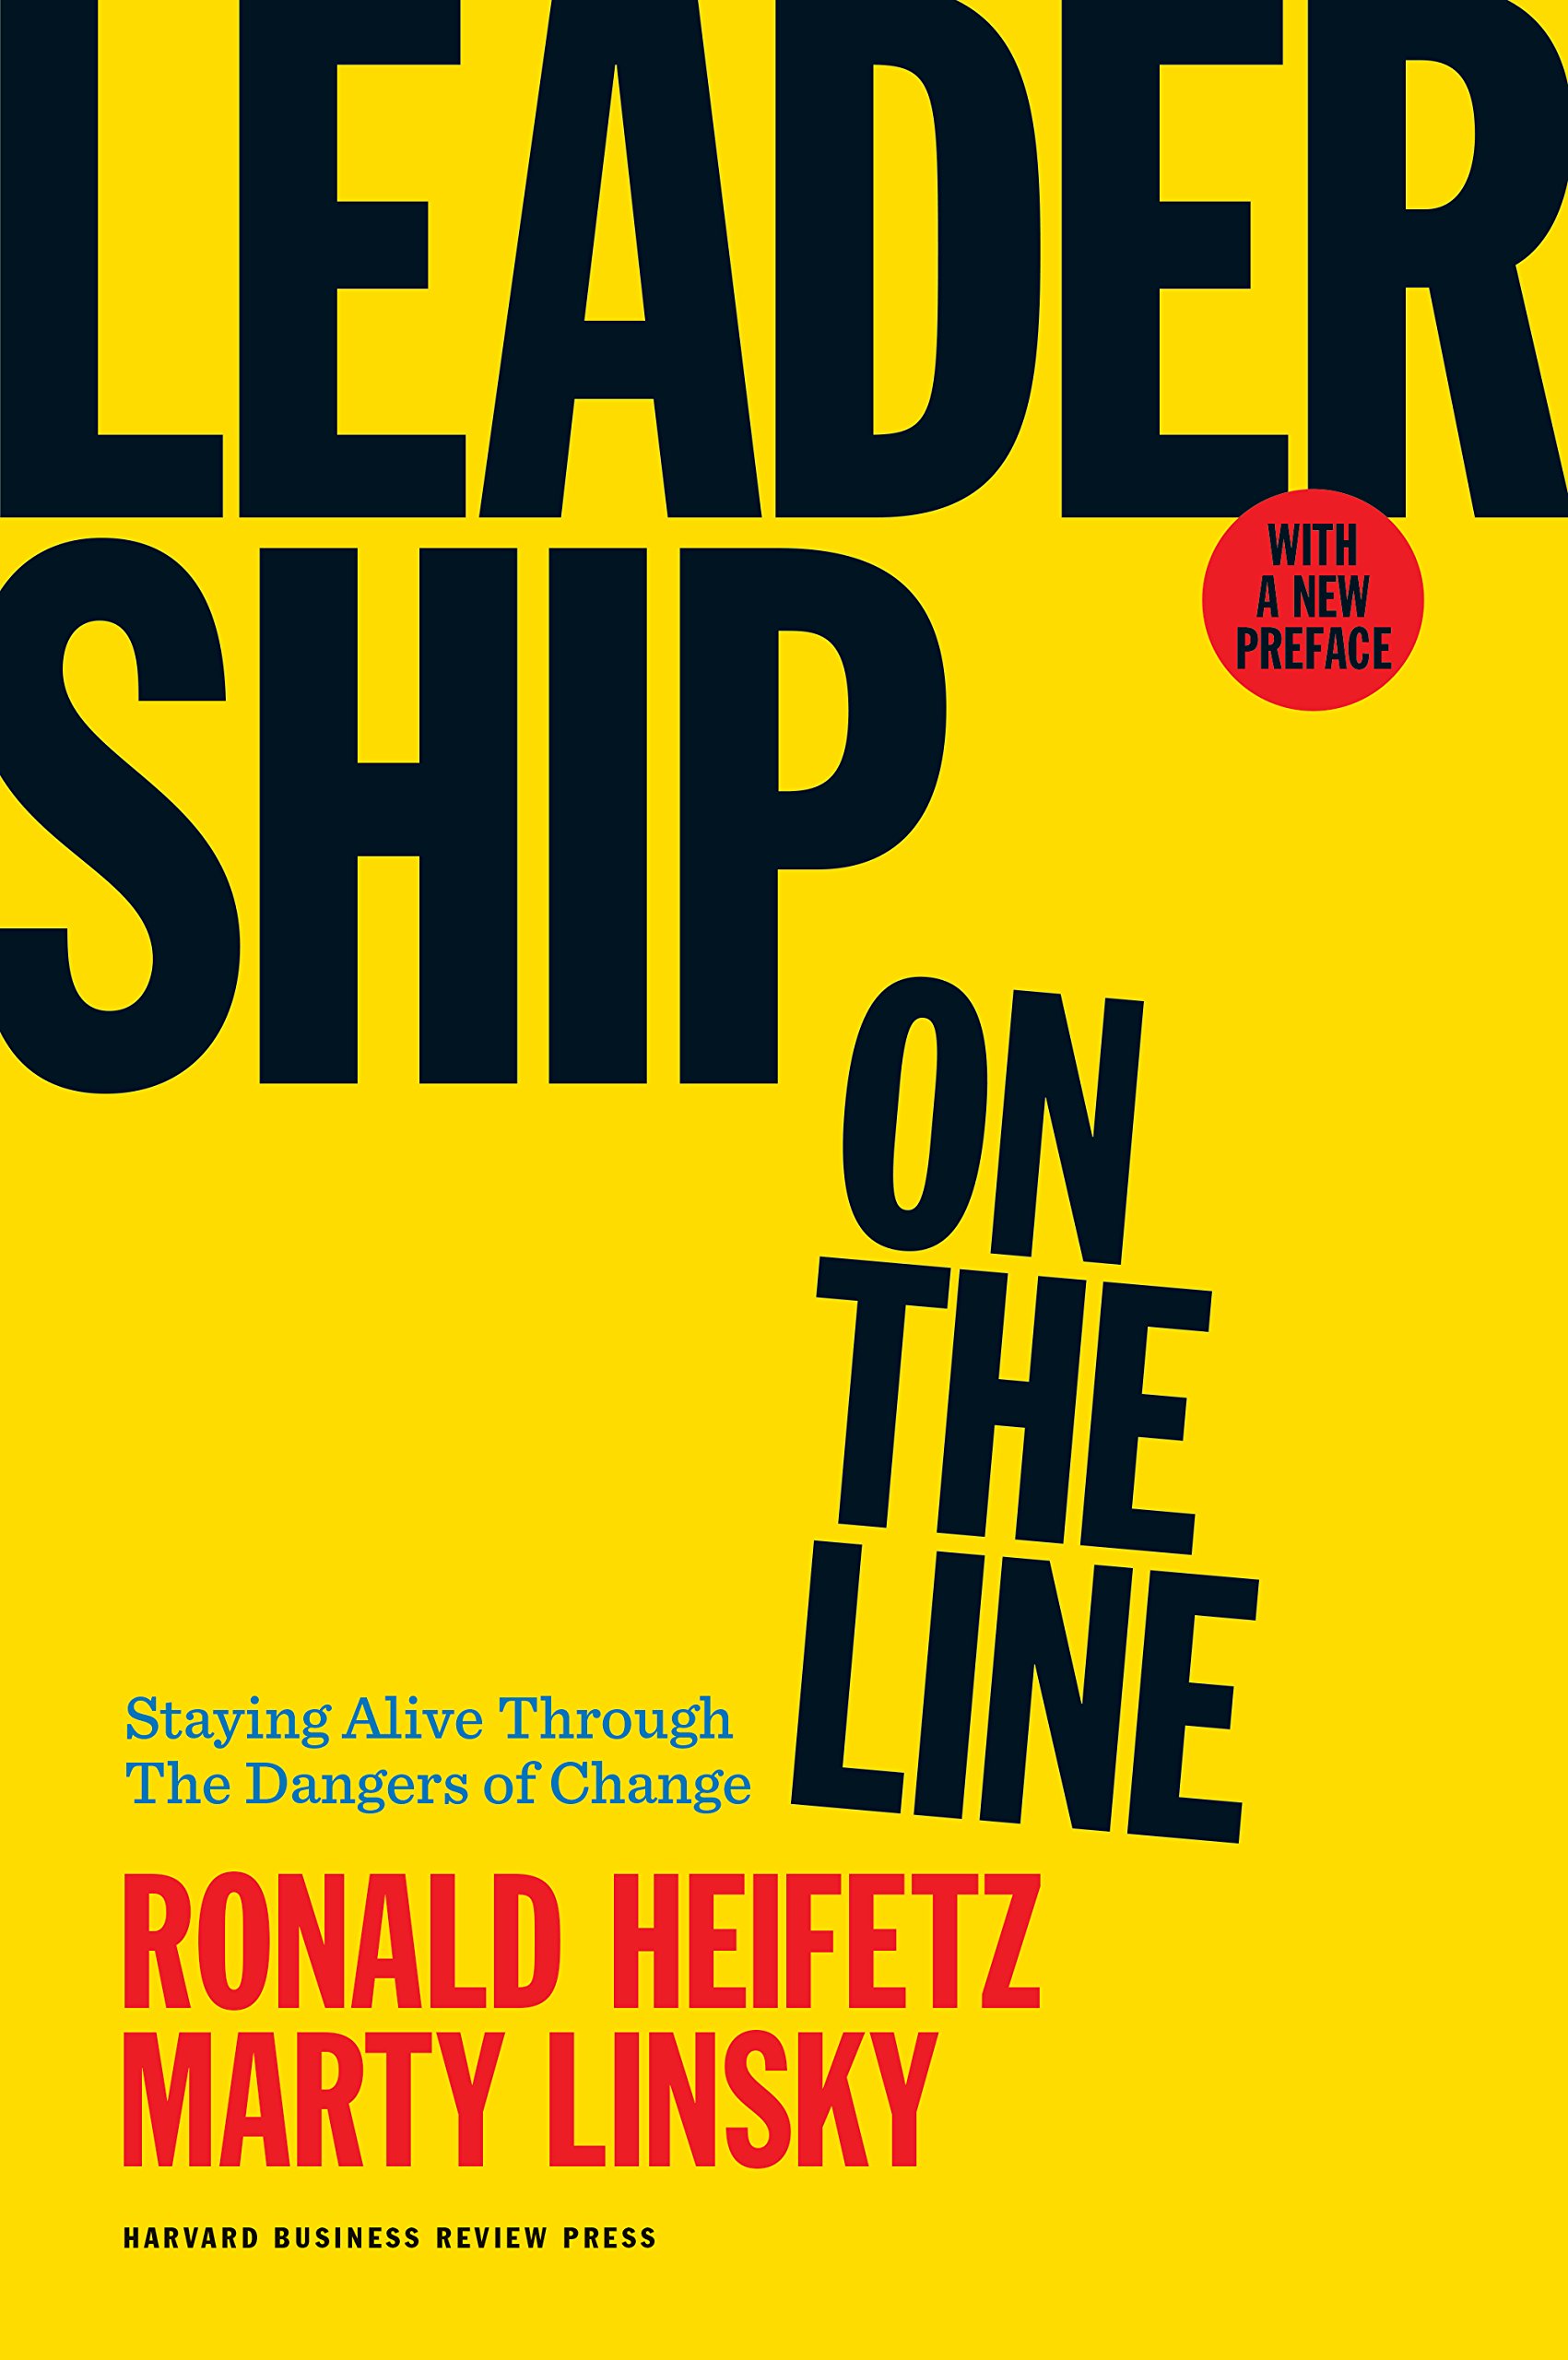 Leadership on the line.jpg